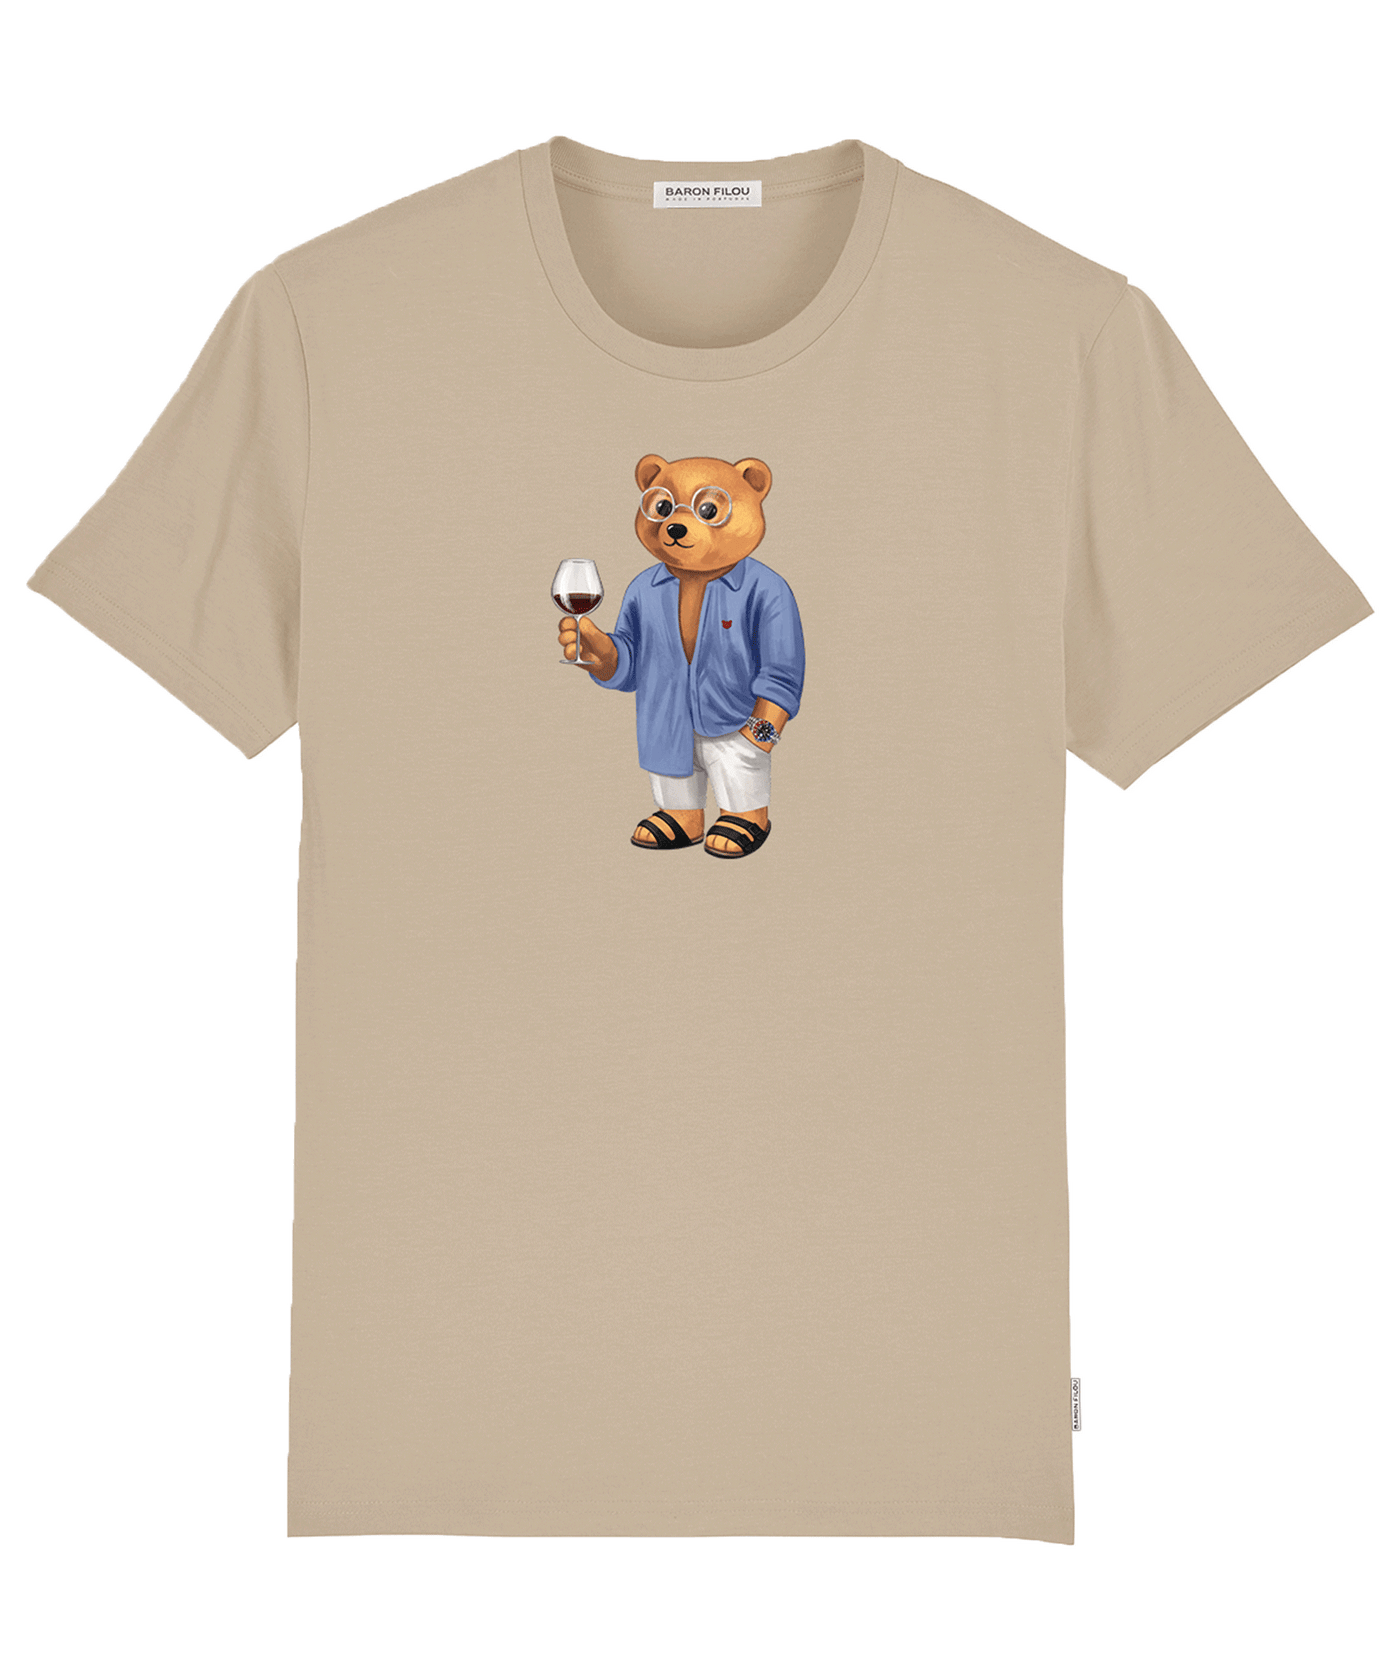 Baron Filou - Filou Lxxvi - Organic T-shirt - Sand Brown